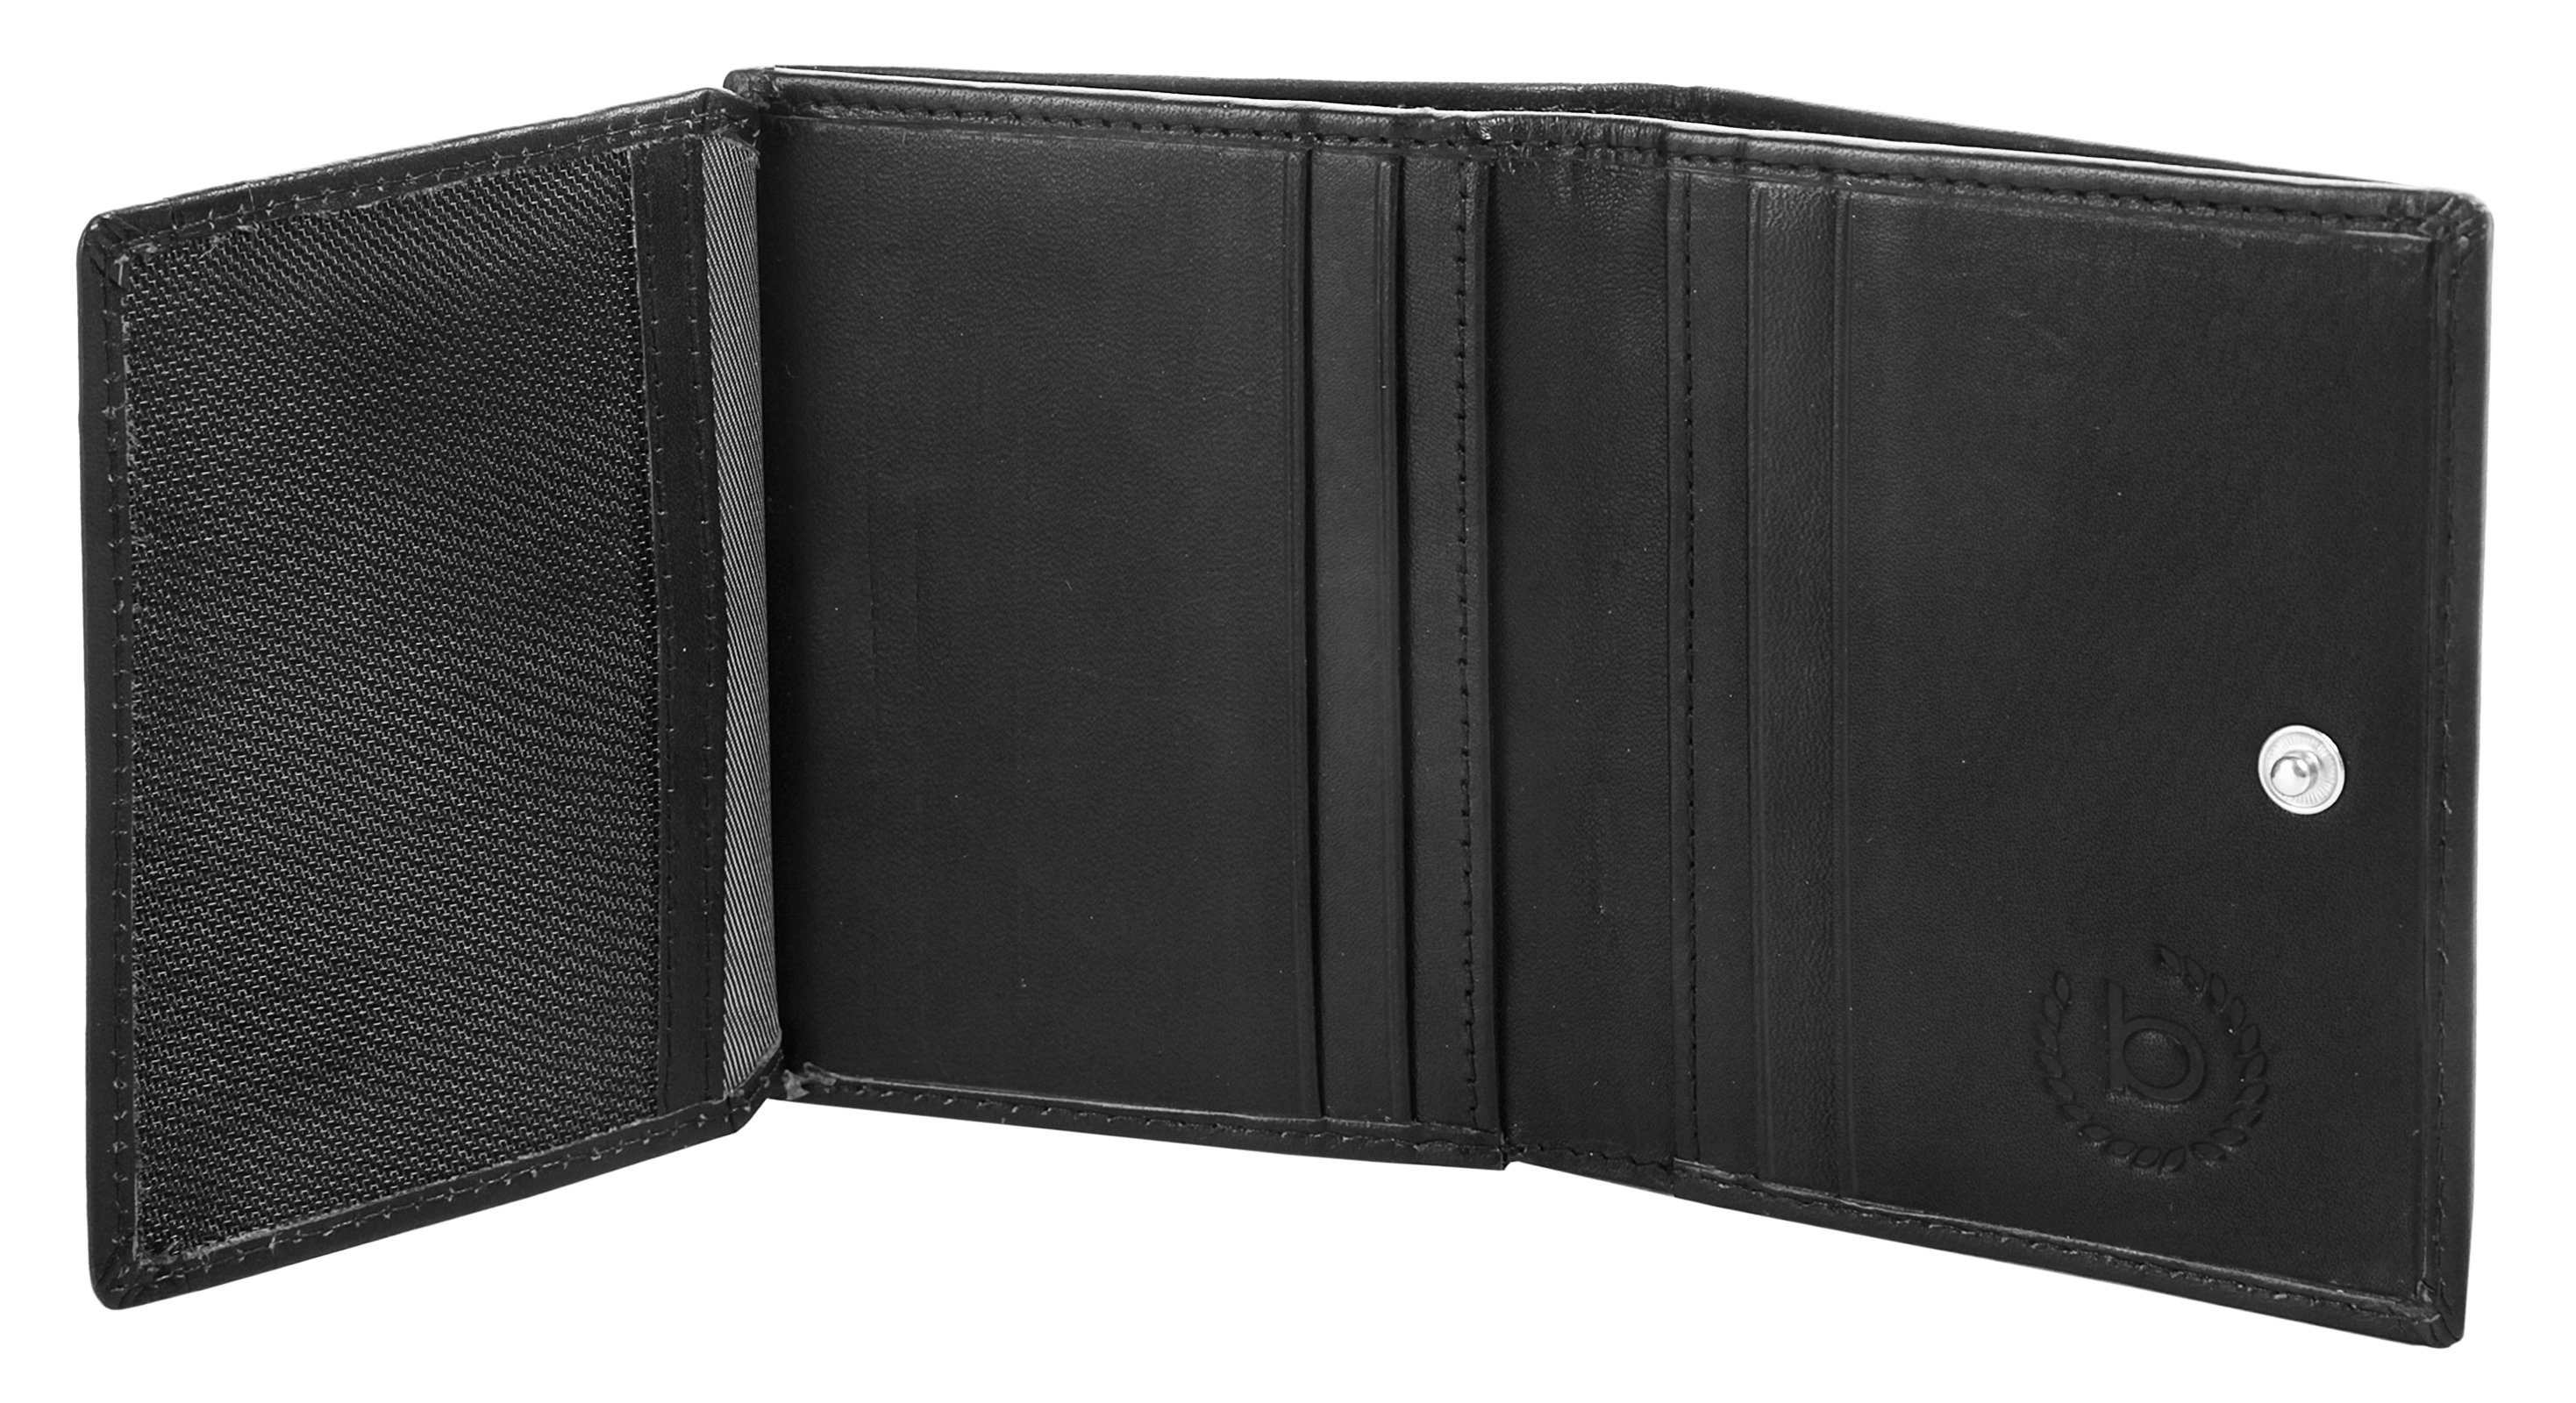 PRIMO echt Brieftasche bugatti RFID, Leder